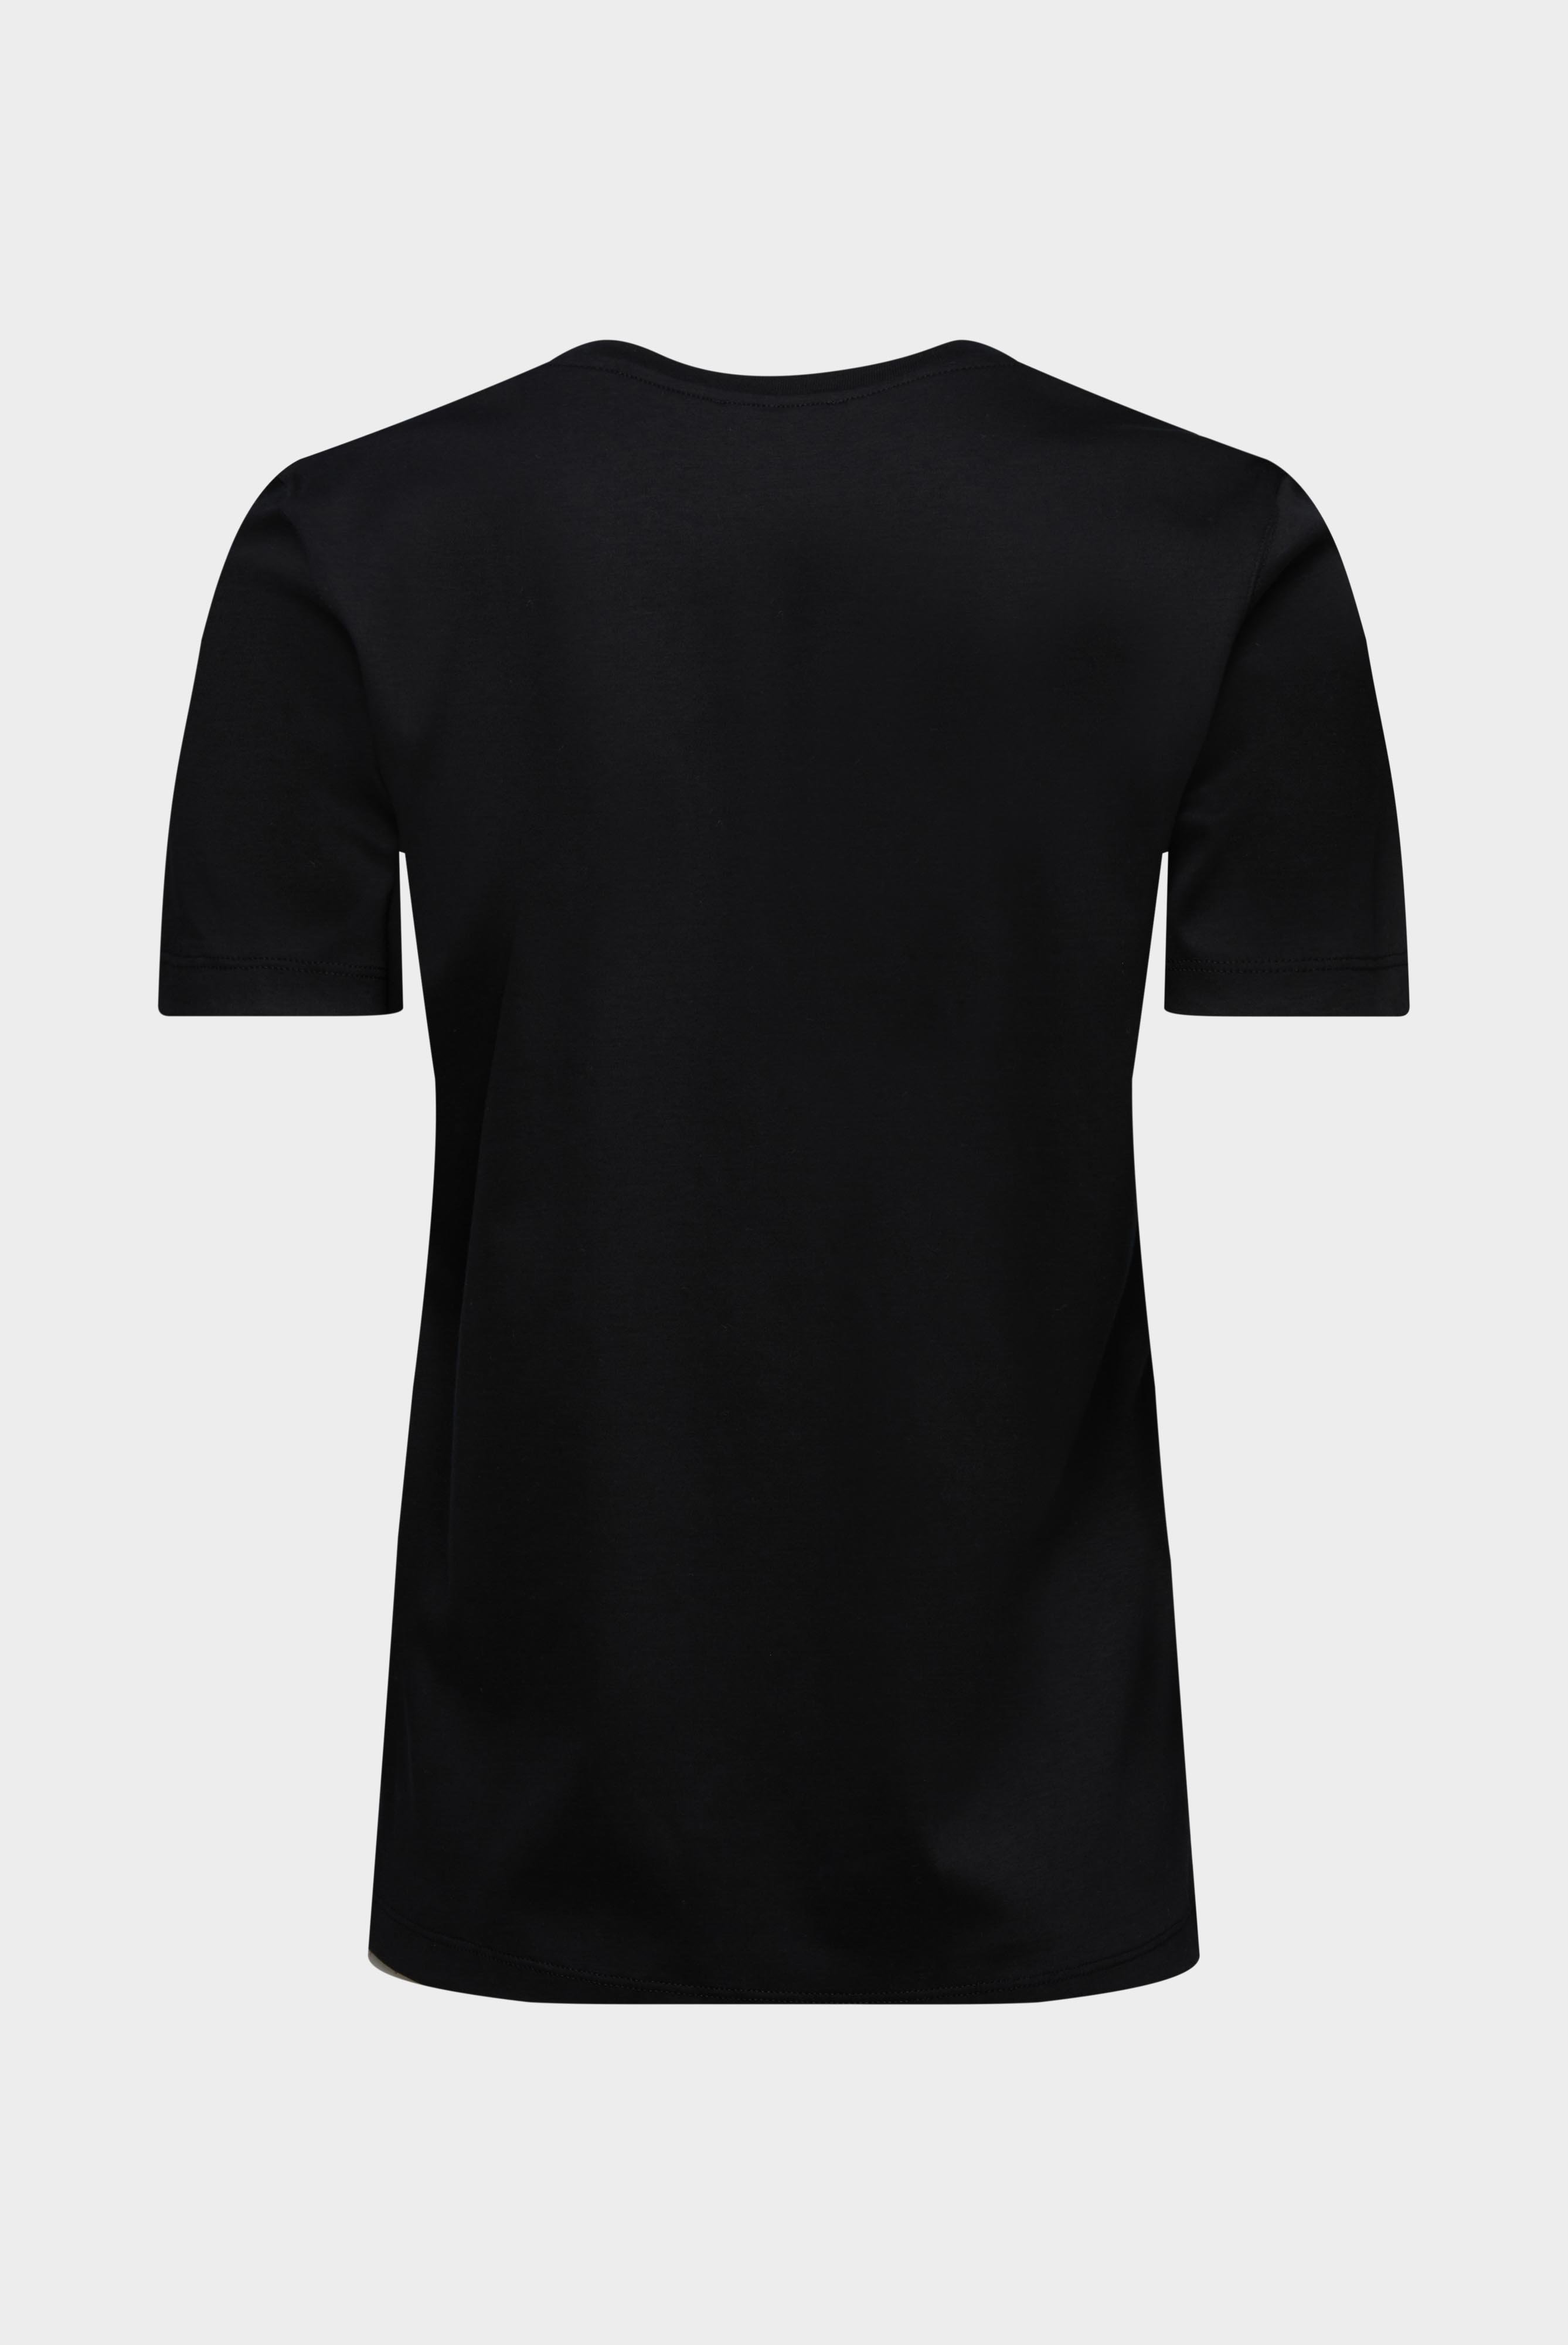 Tops & T-Shirts+Jersey T-Shirt+05.6384.18.180031.099.44